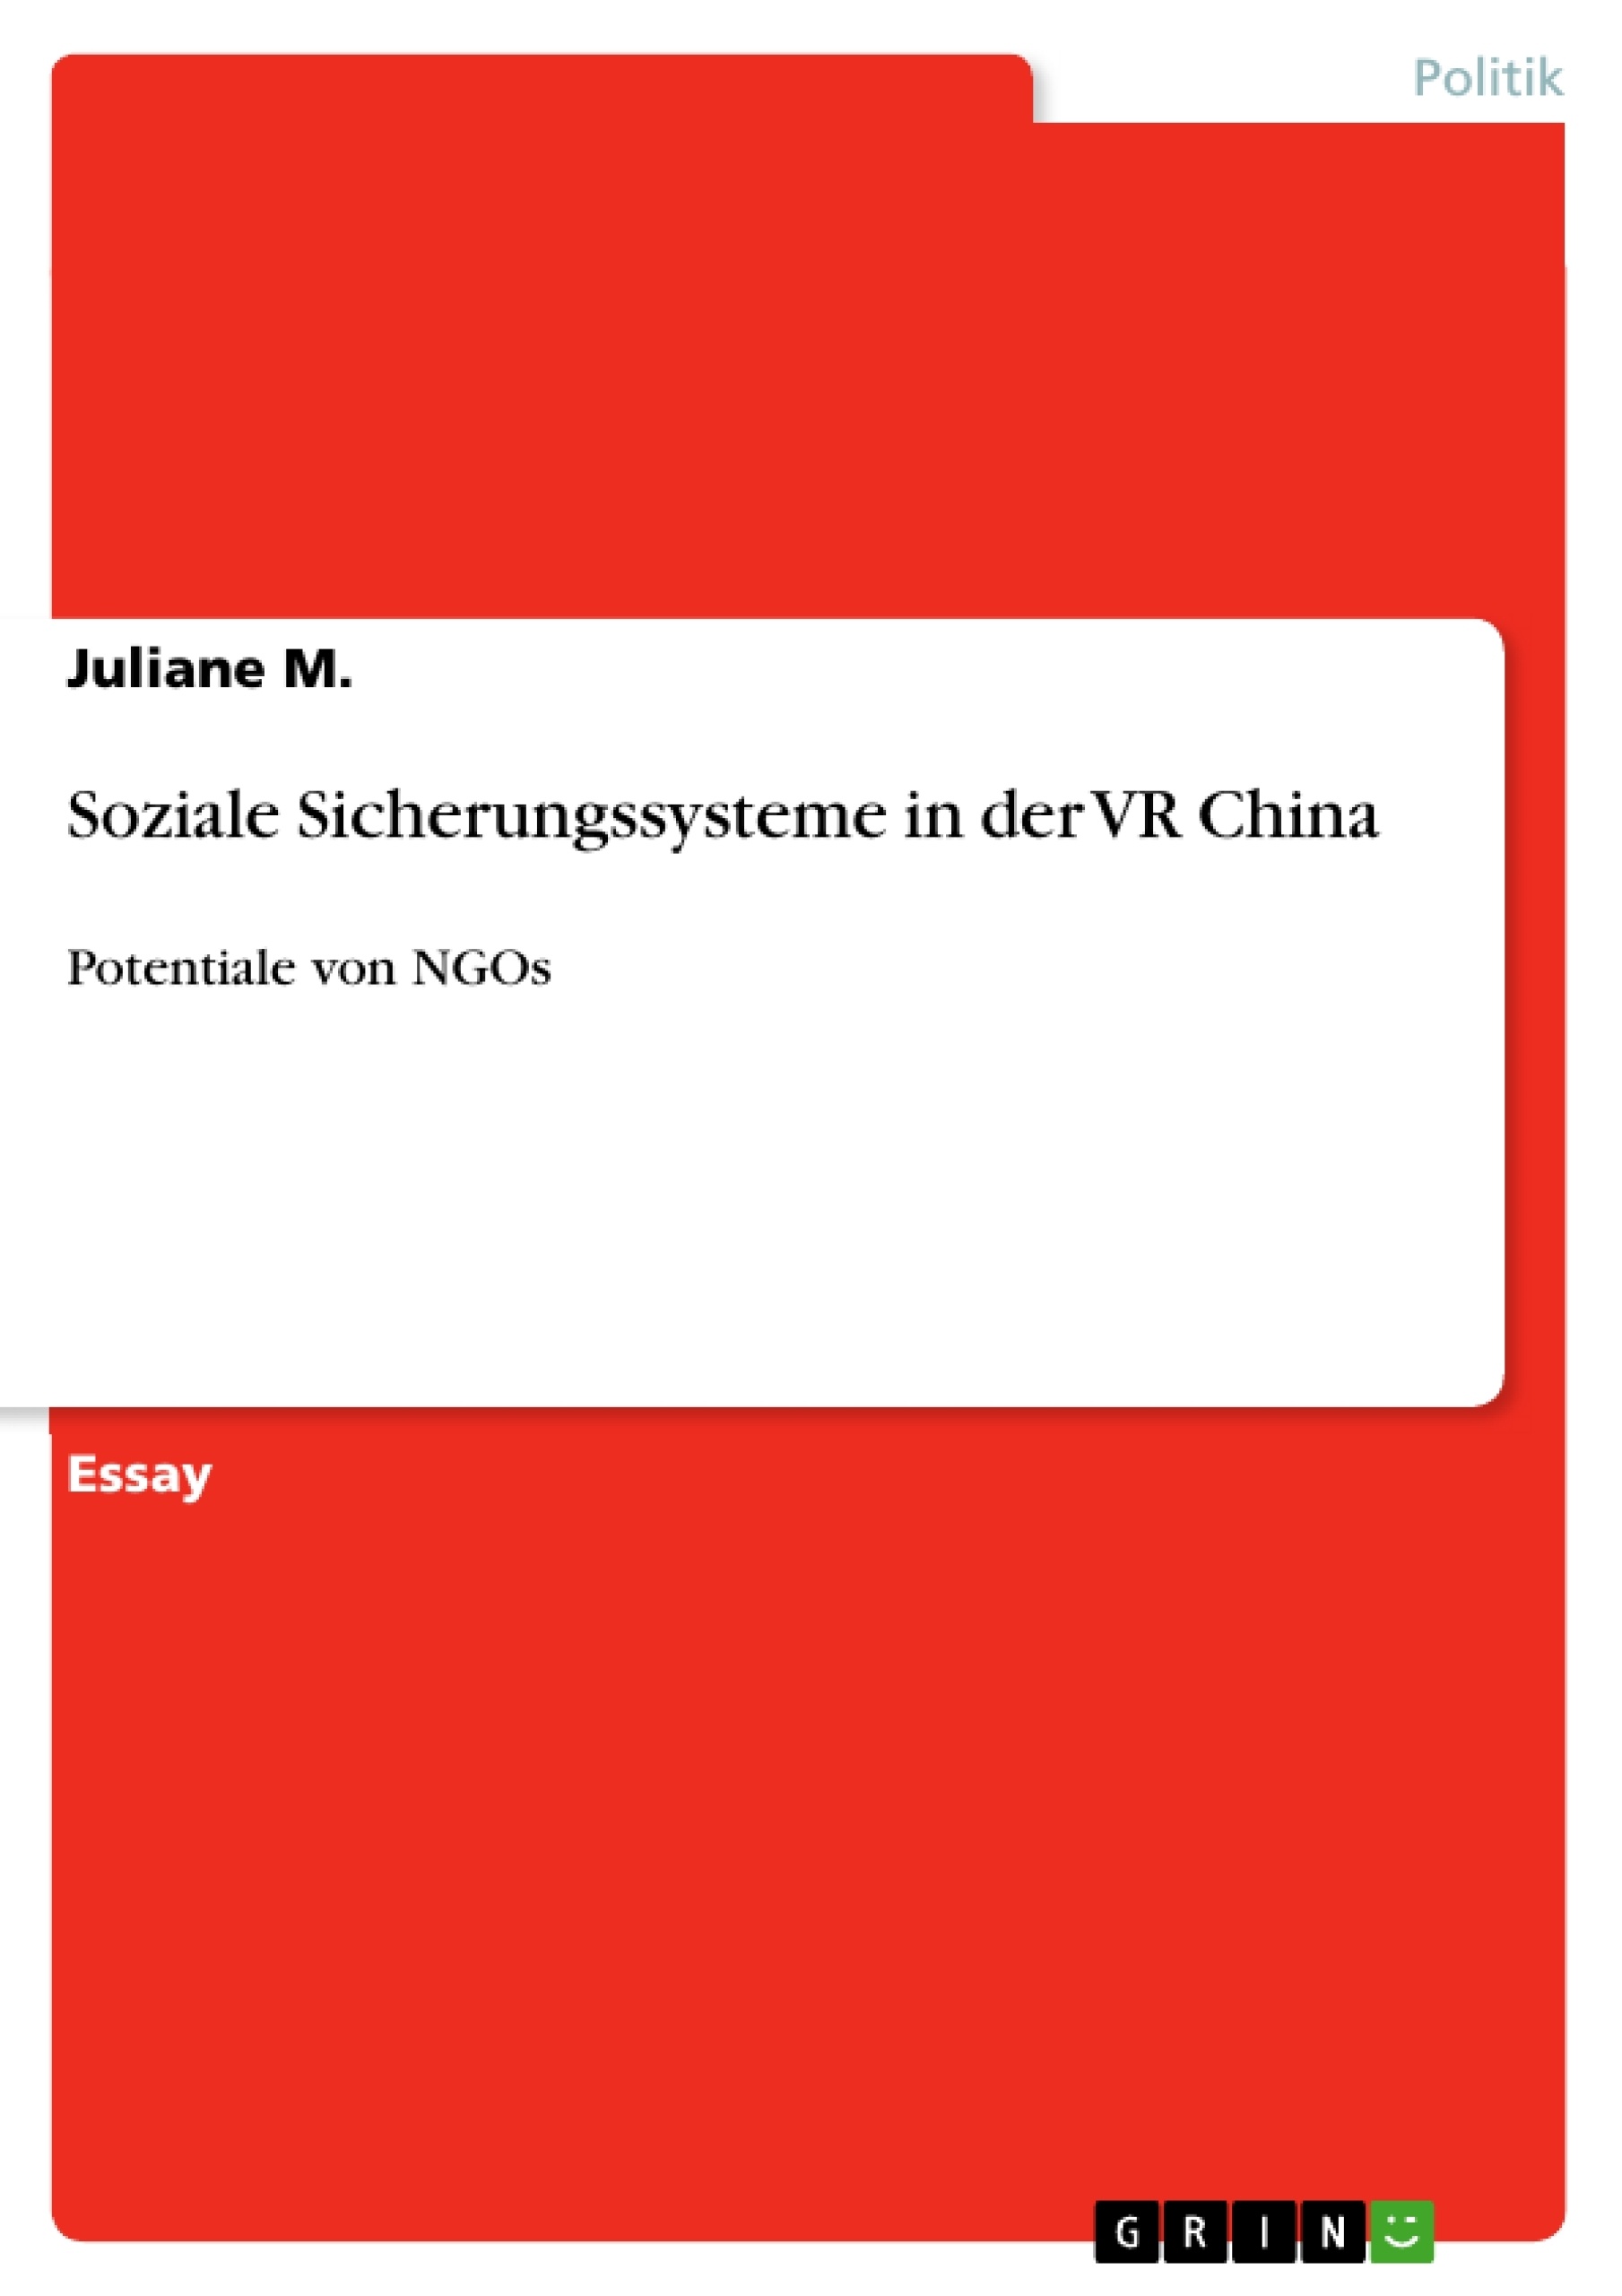 Título: Soziale Sicherungssysteme in der VR China